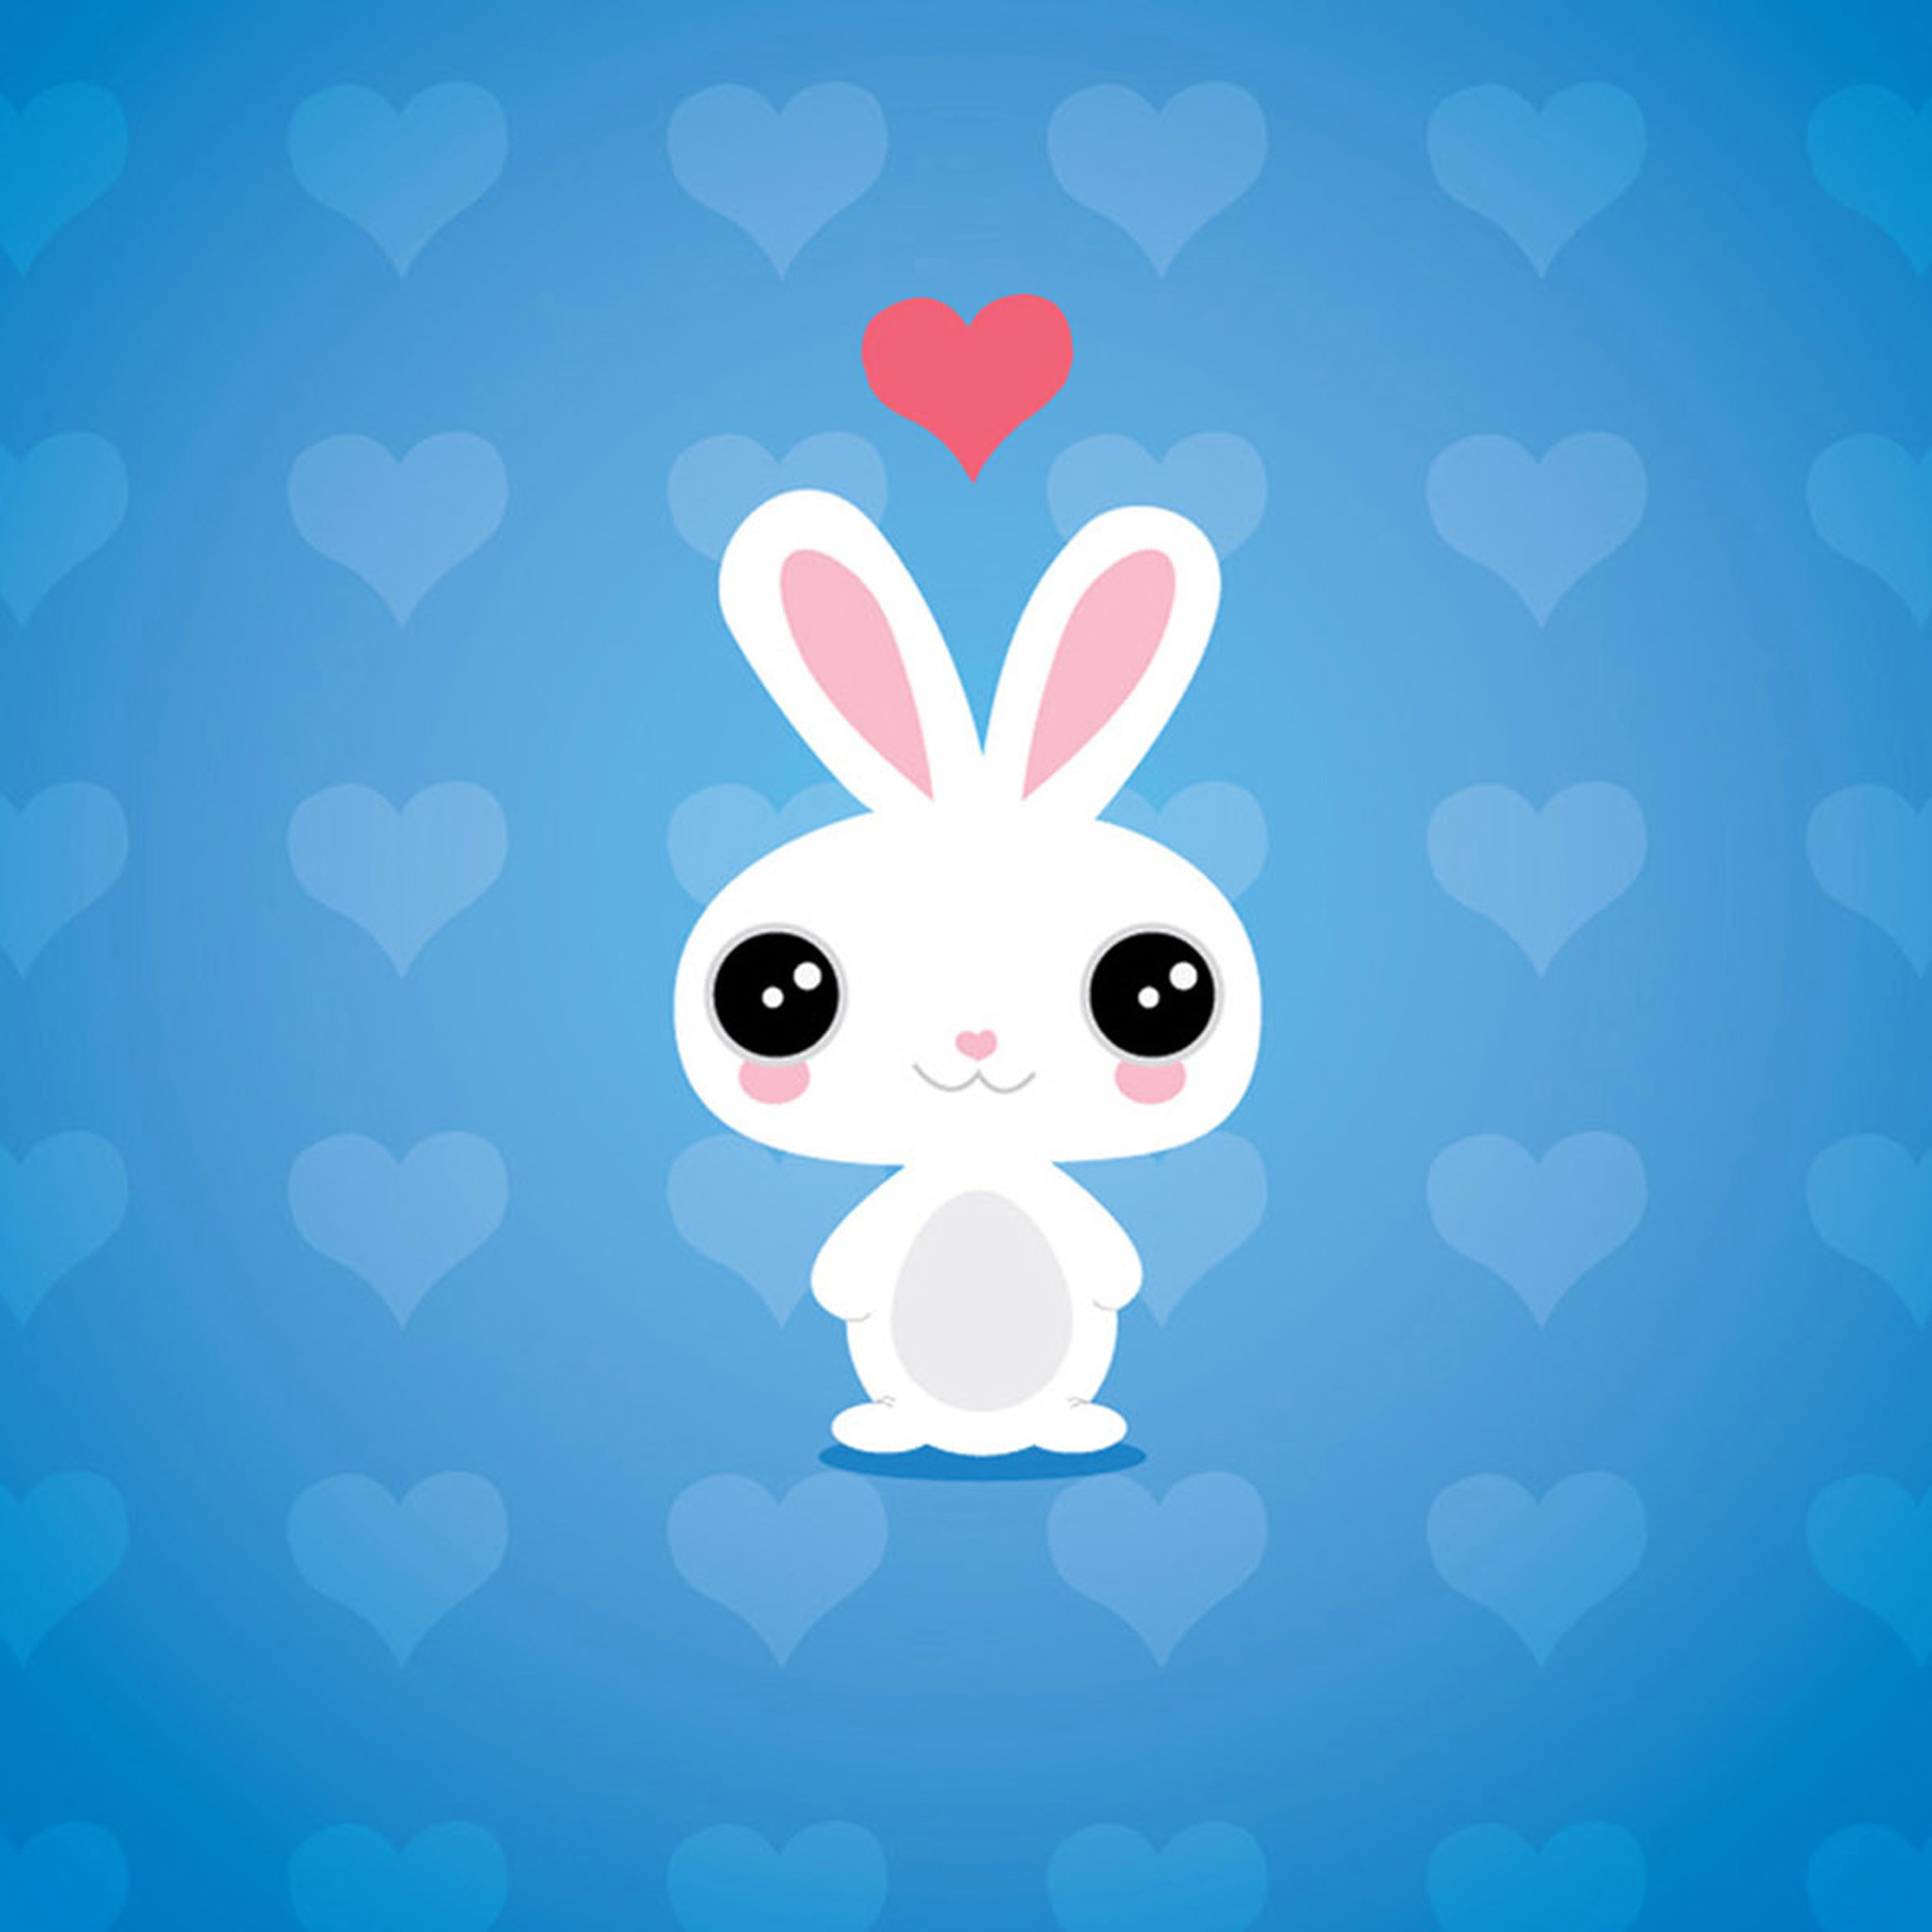 2048x2048 Cute cartoon rabbit iPad Air 2 Wallpapers.jpg (2048Ã2048)